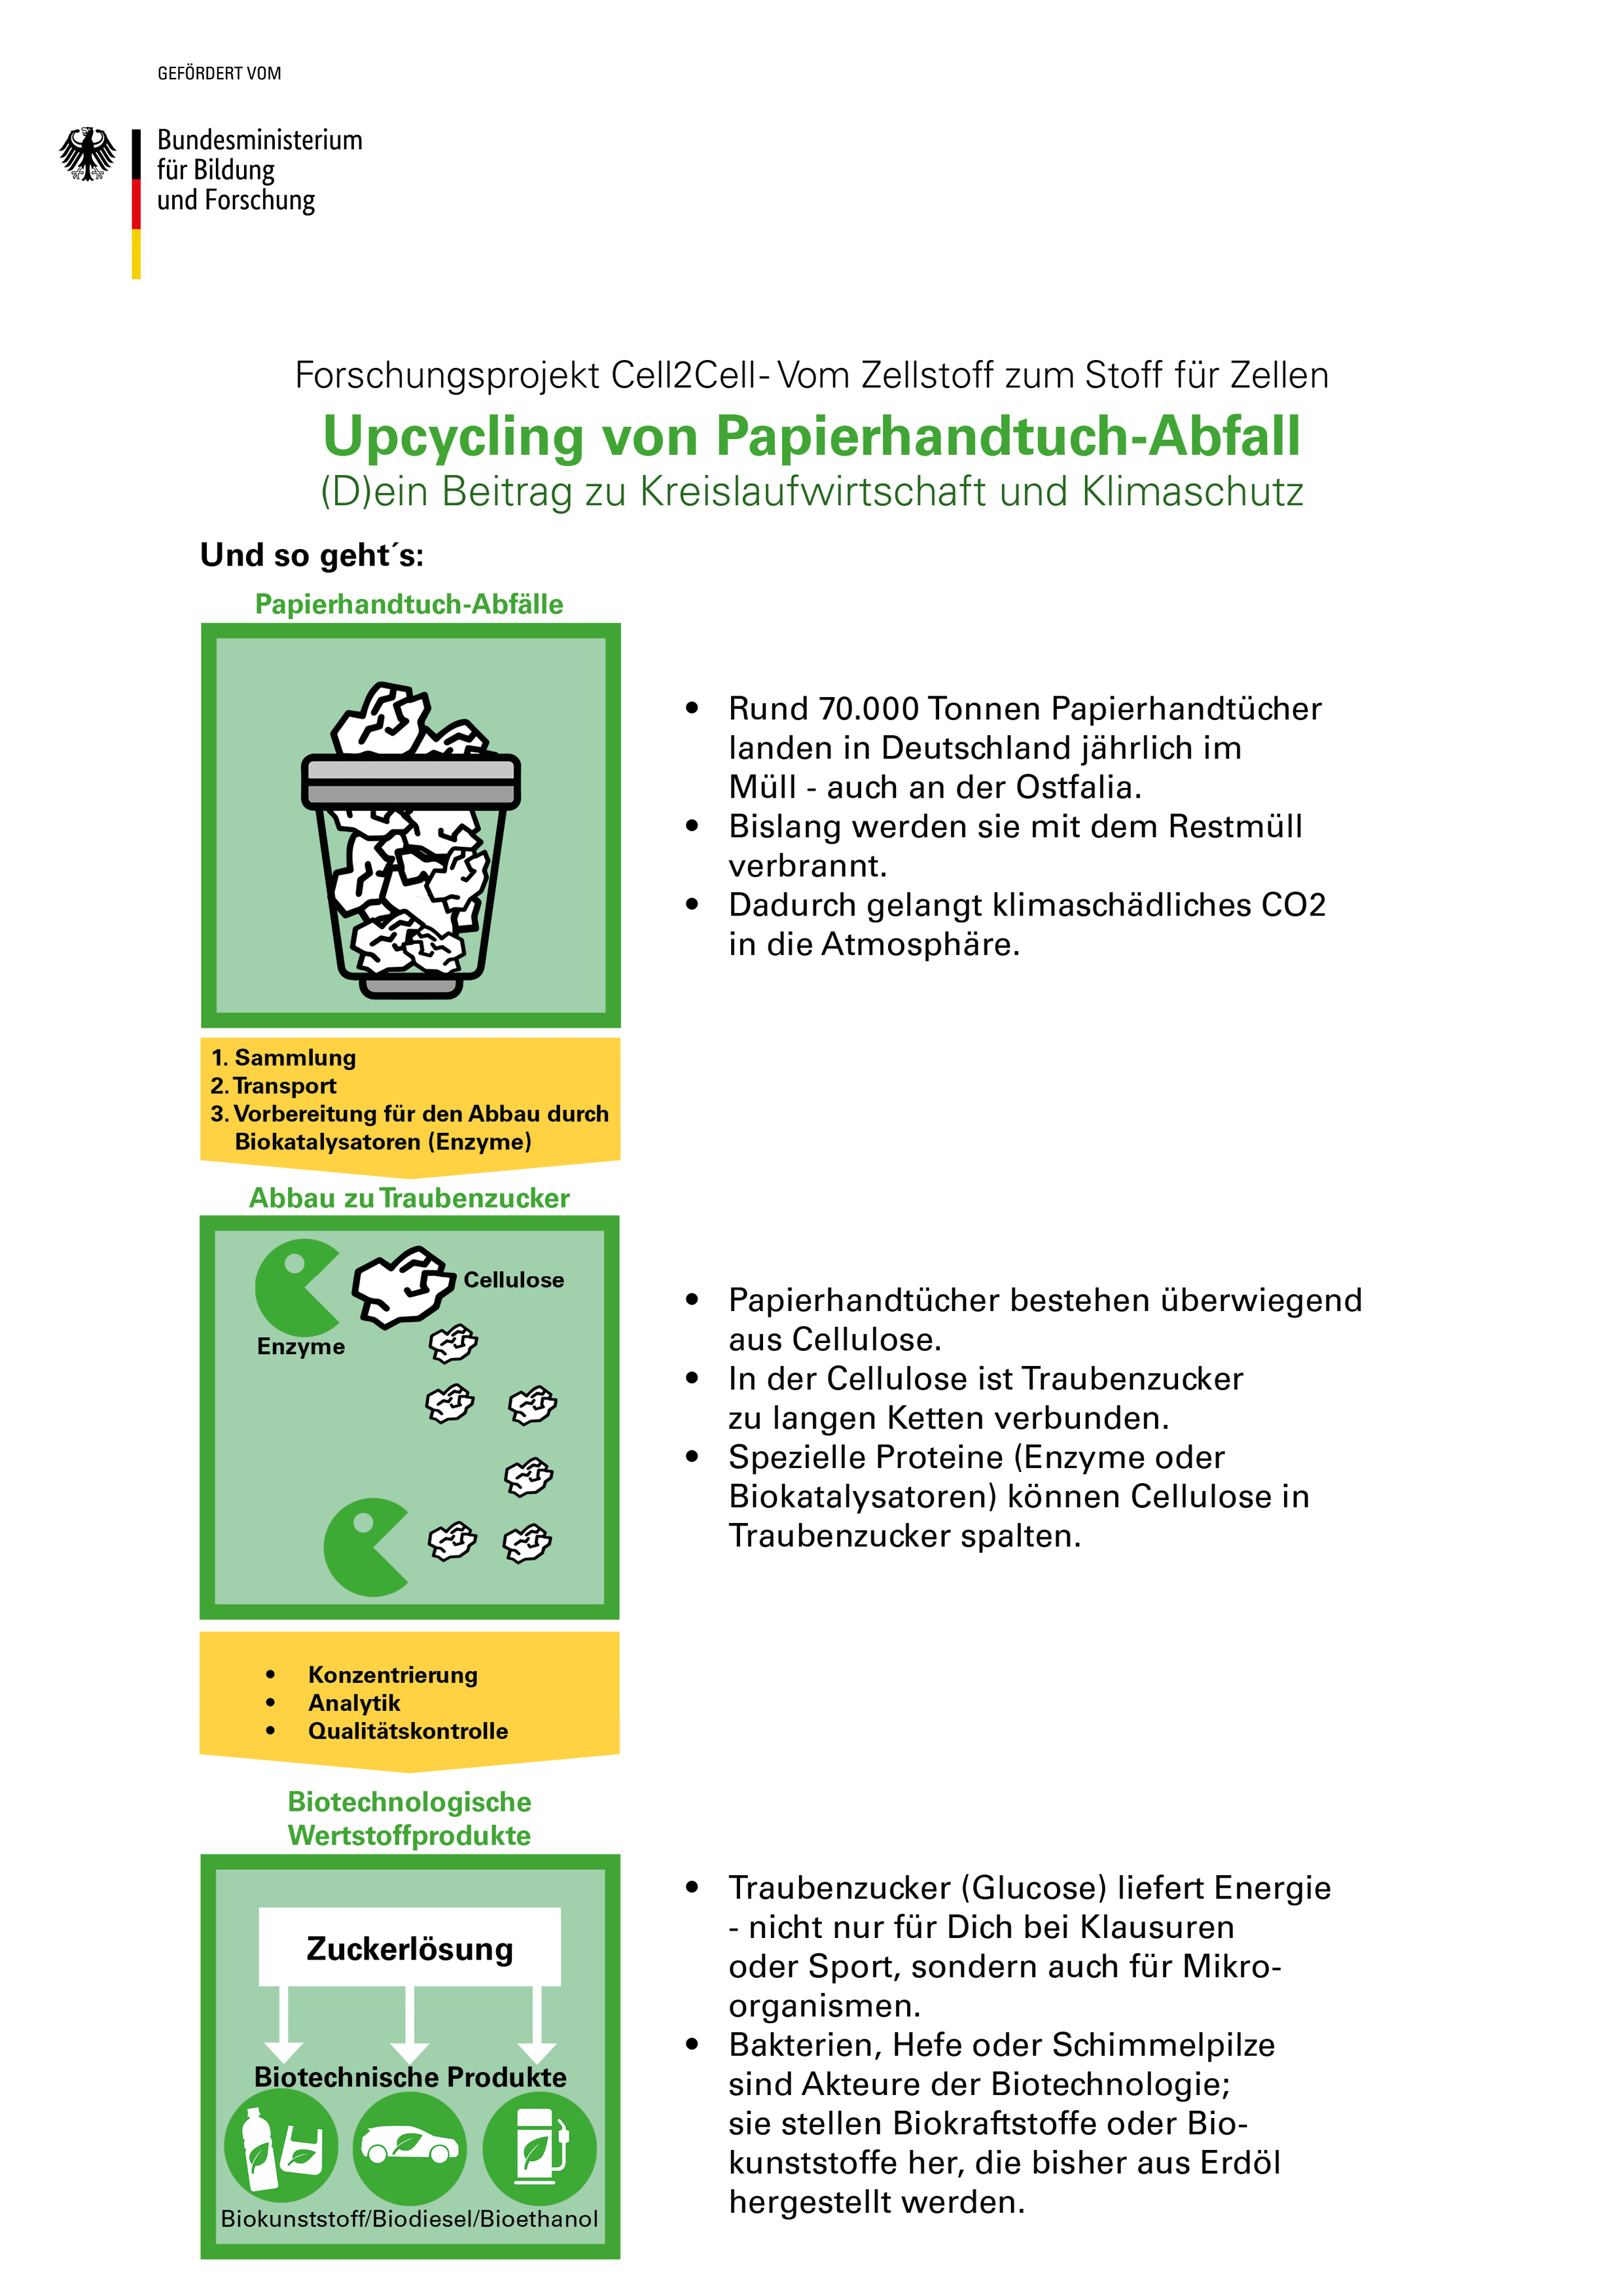 Forschungsprojekt - Upcycling von Papierhandtuch-Abfall